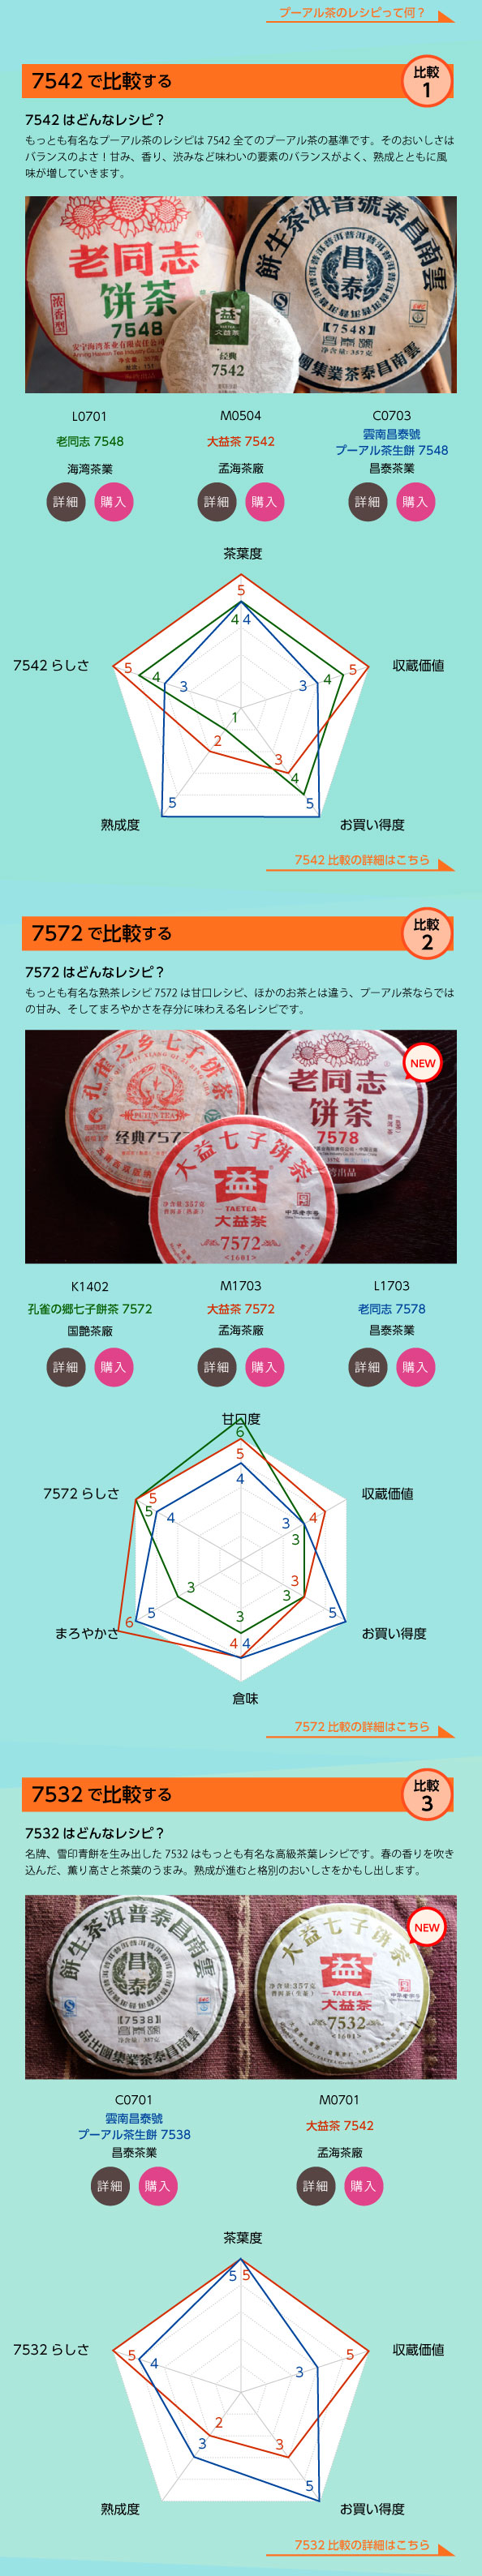 各茶廠の生茶7542,熟茶7572,生茶7532を比較してみました